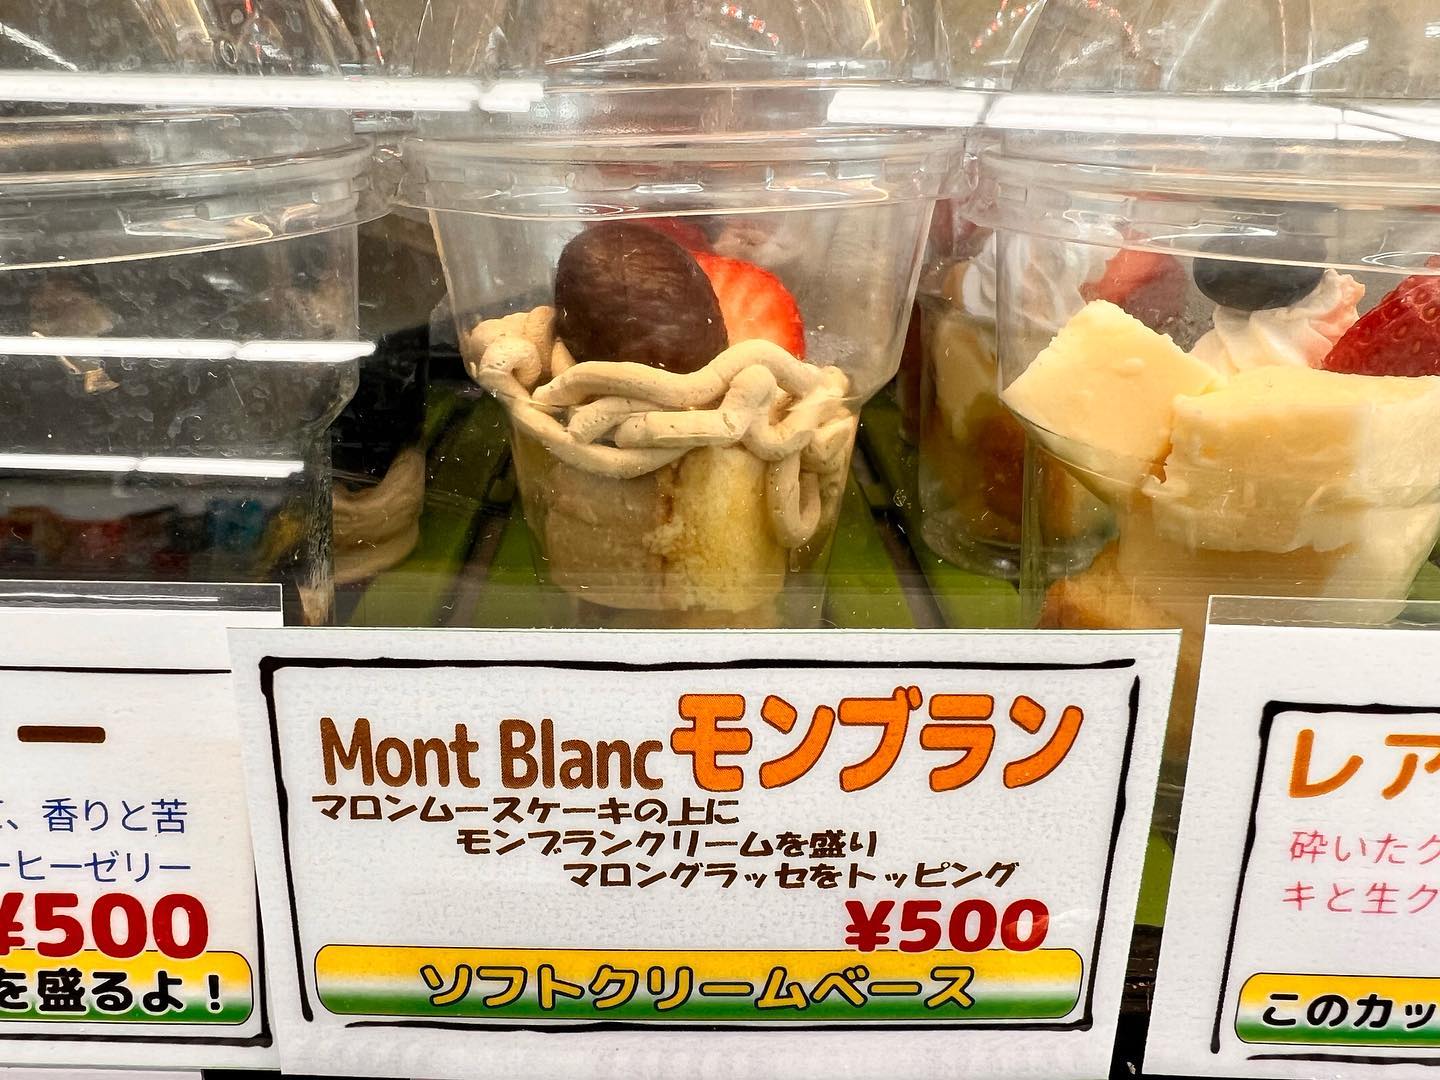 本日も新商品
フルーツカップの
『Mont Blanc』そう、
️
マロンムースケーキの上にモンブランクリームを盛りマロングラッセとイチゴをトッピングしました〜️